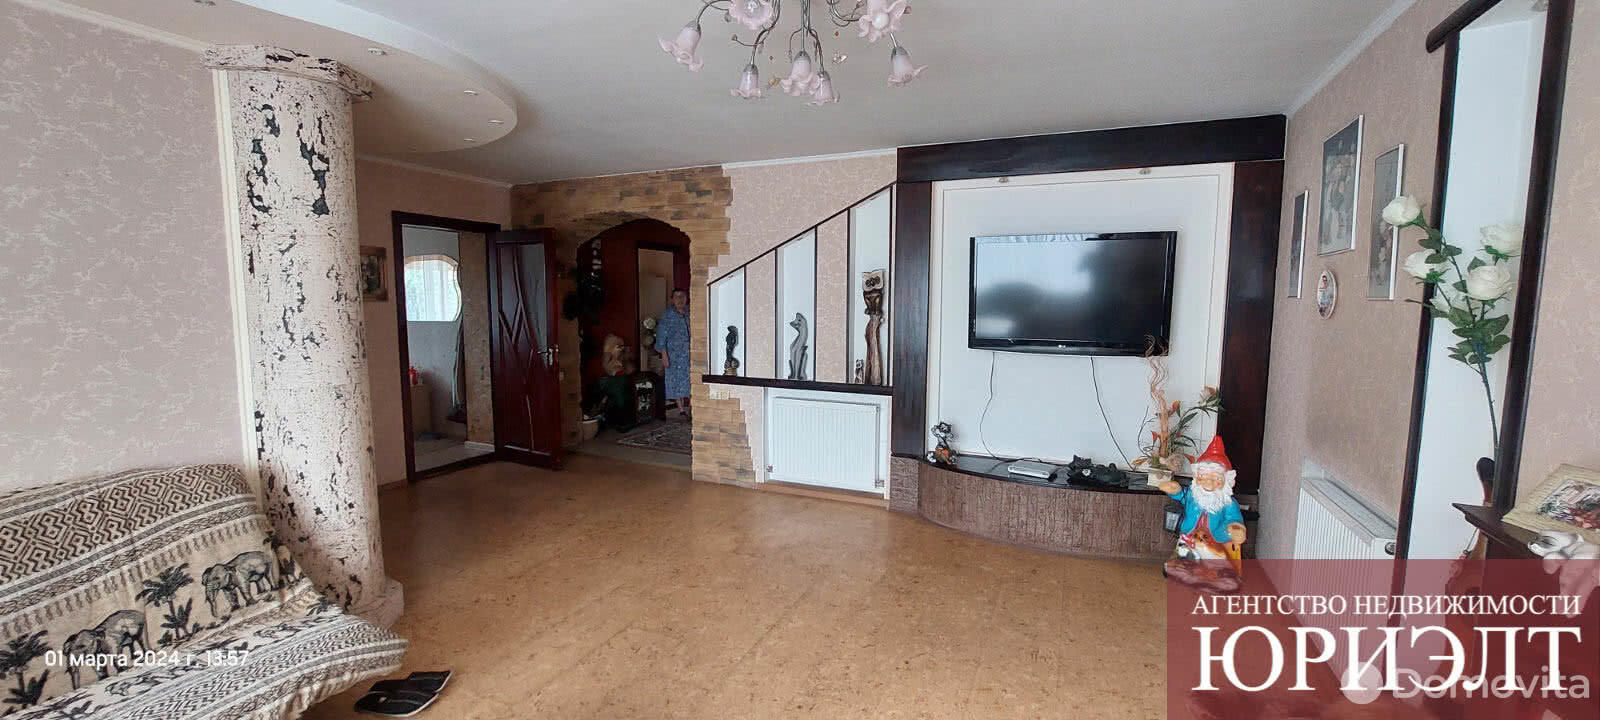 Продажа 1-этажного дома в Бобруйске, Могилевская область пер. Бахарова, 56000USD, код 632865 - фото 2